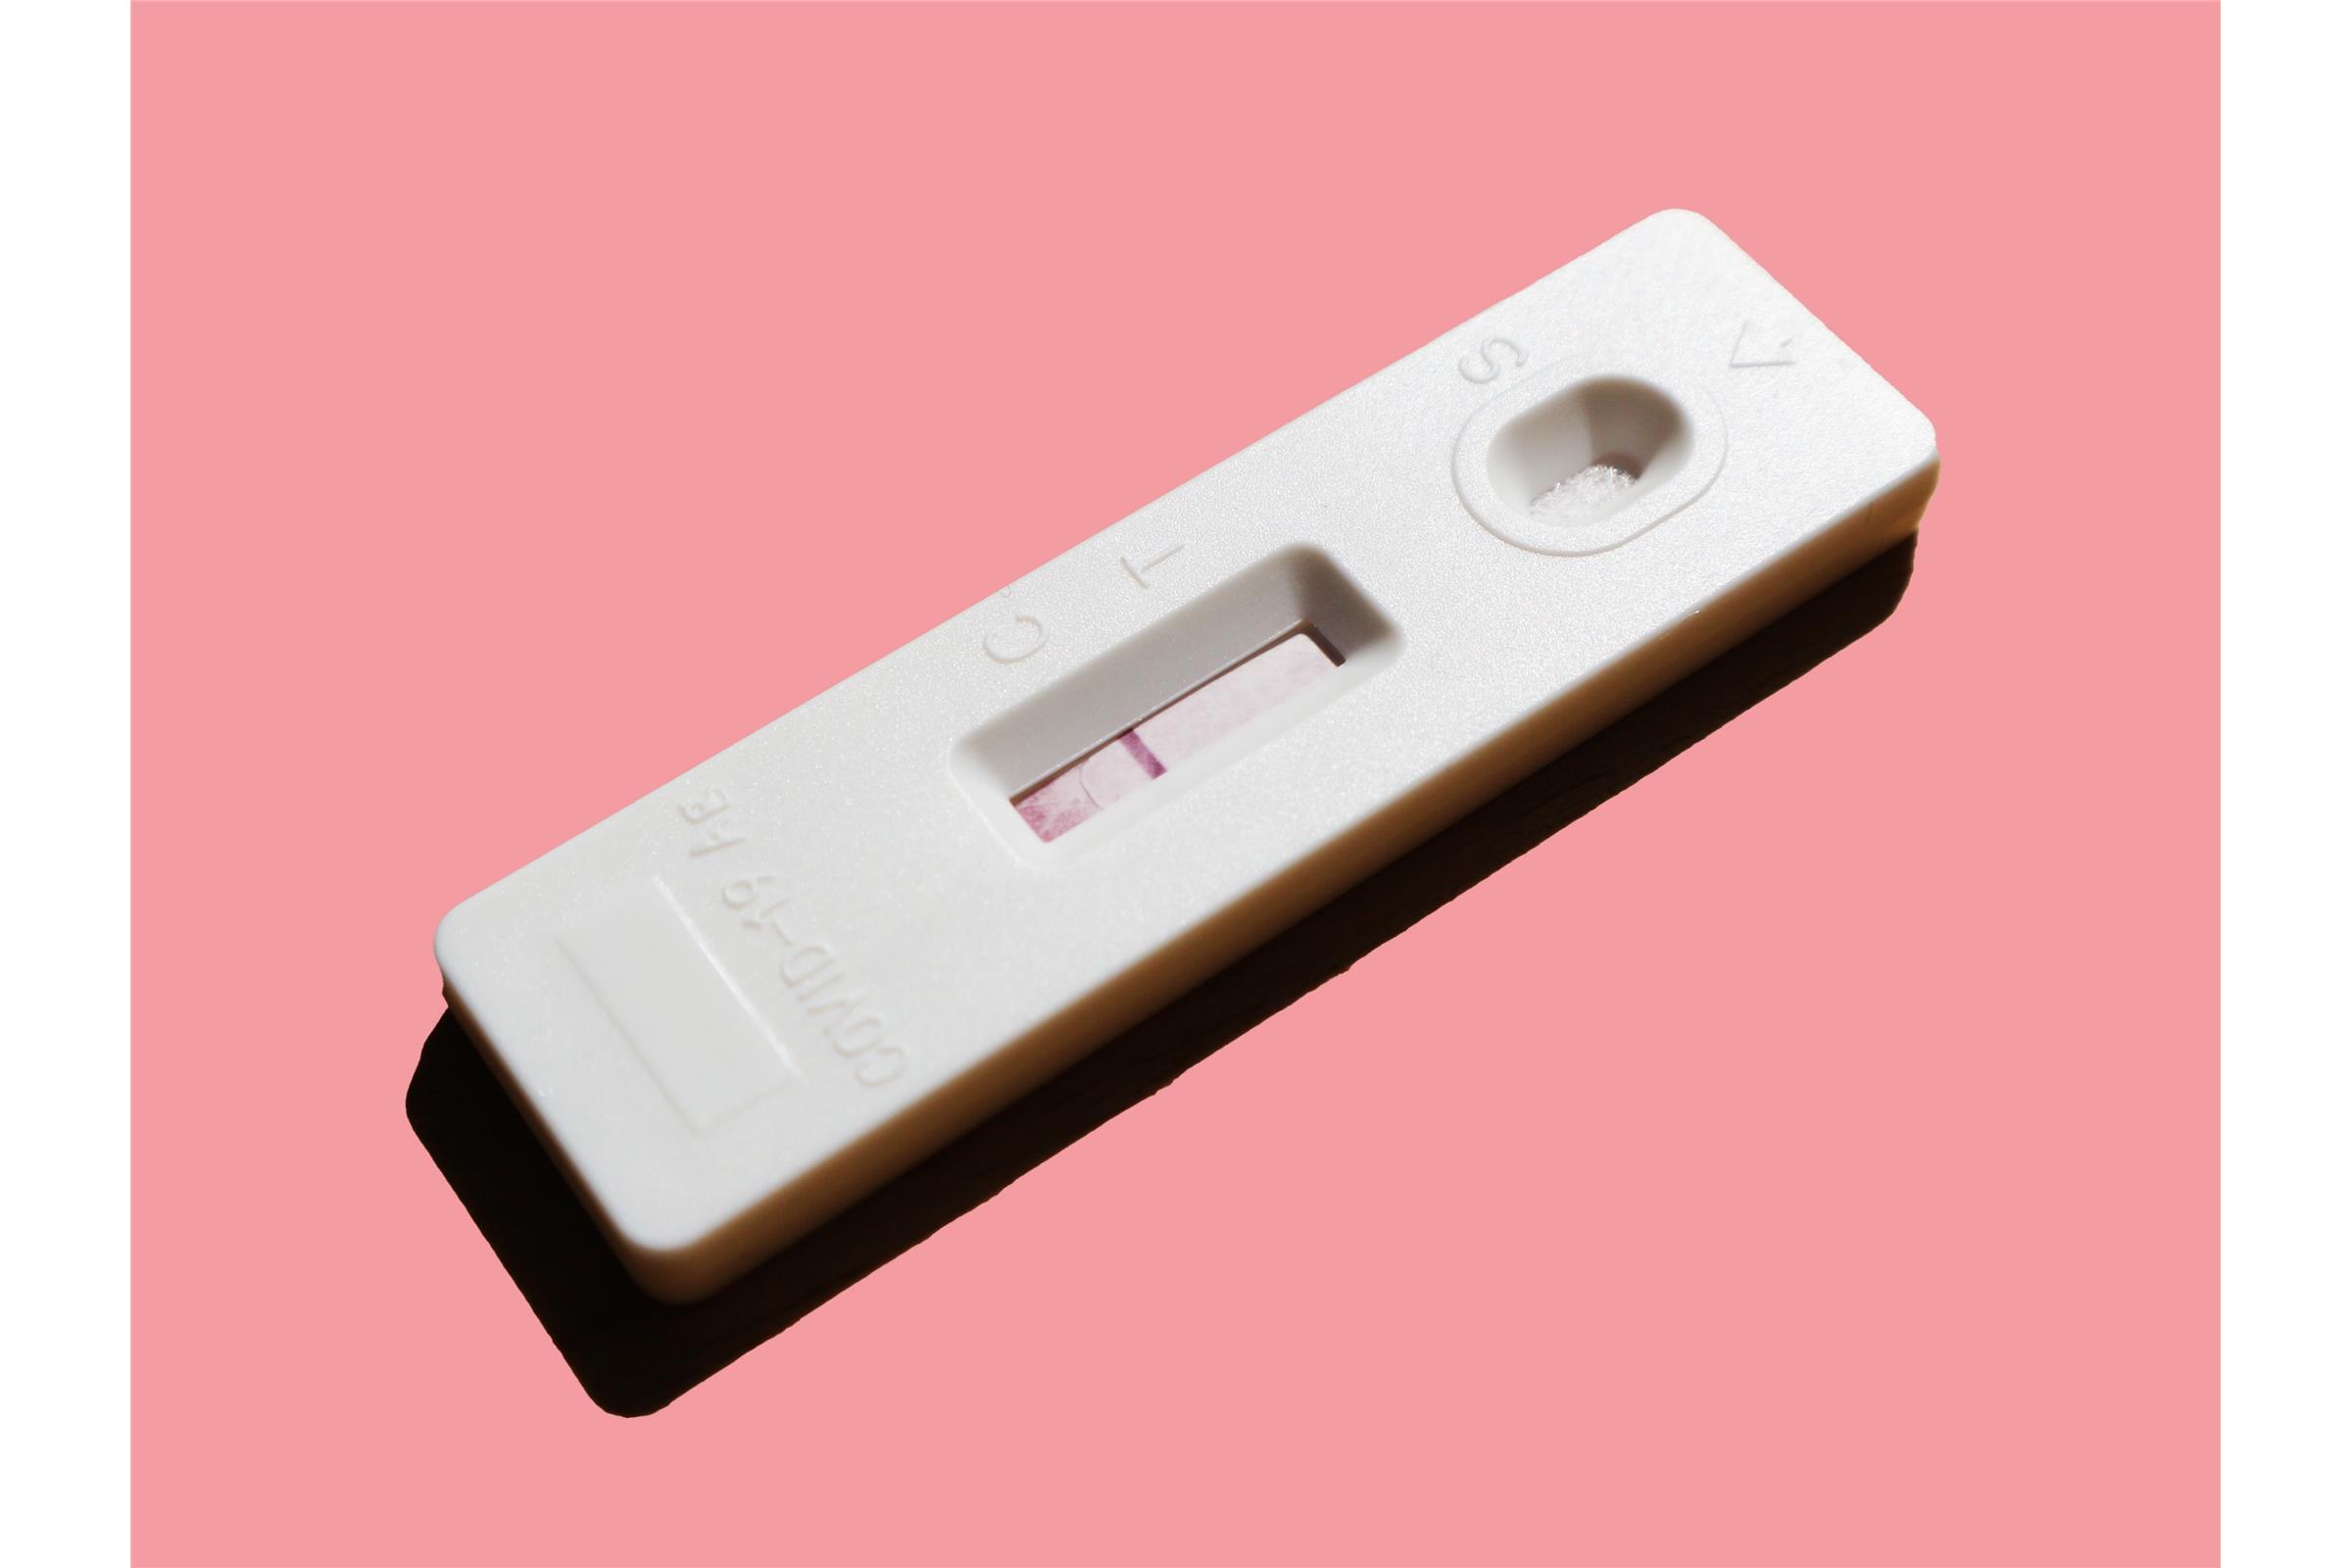 रक्त के माध्यम से गर्भावस्था हार्मोन का विश्लेषण